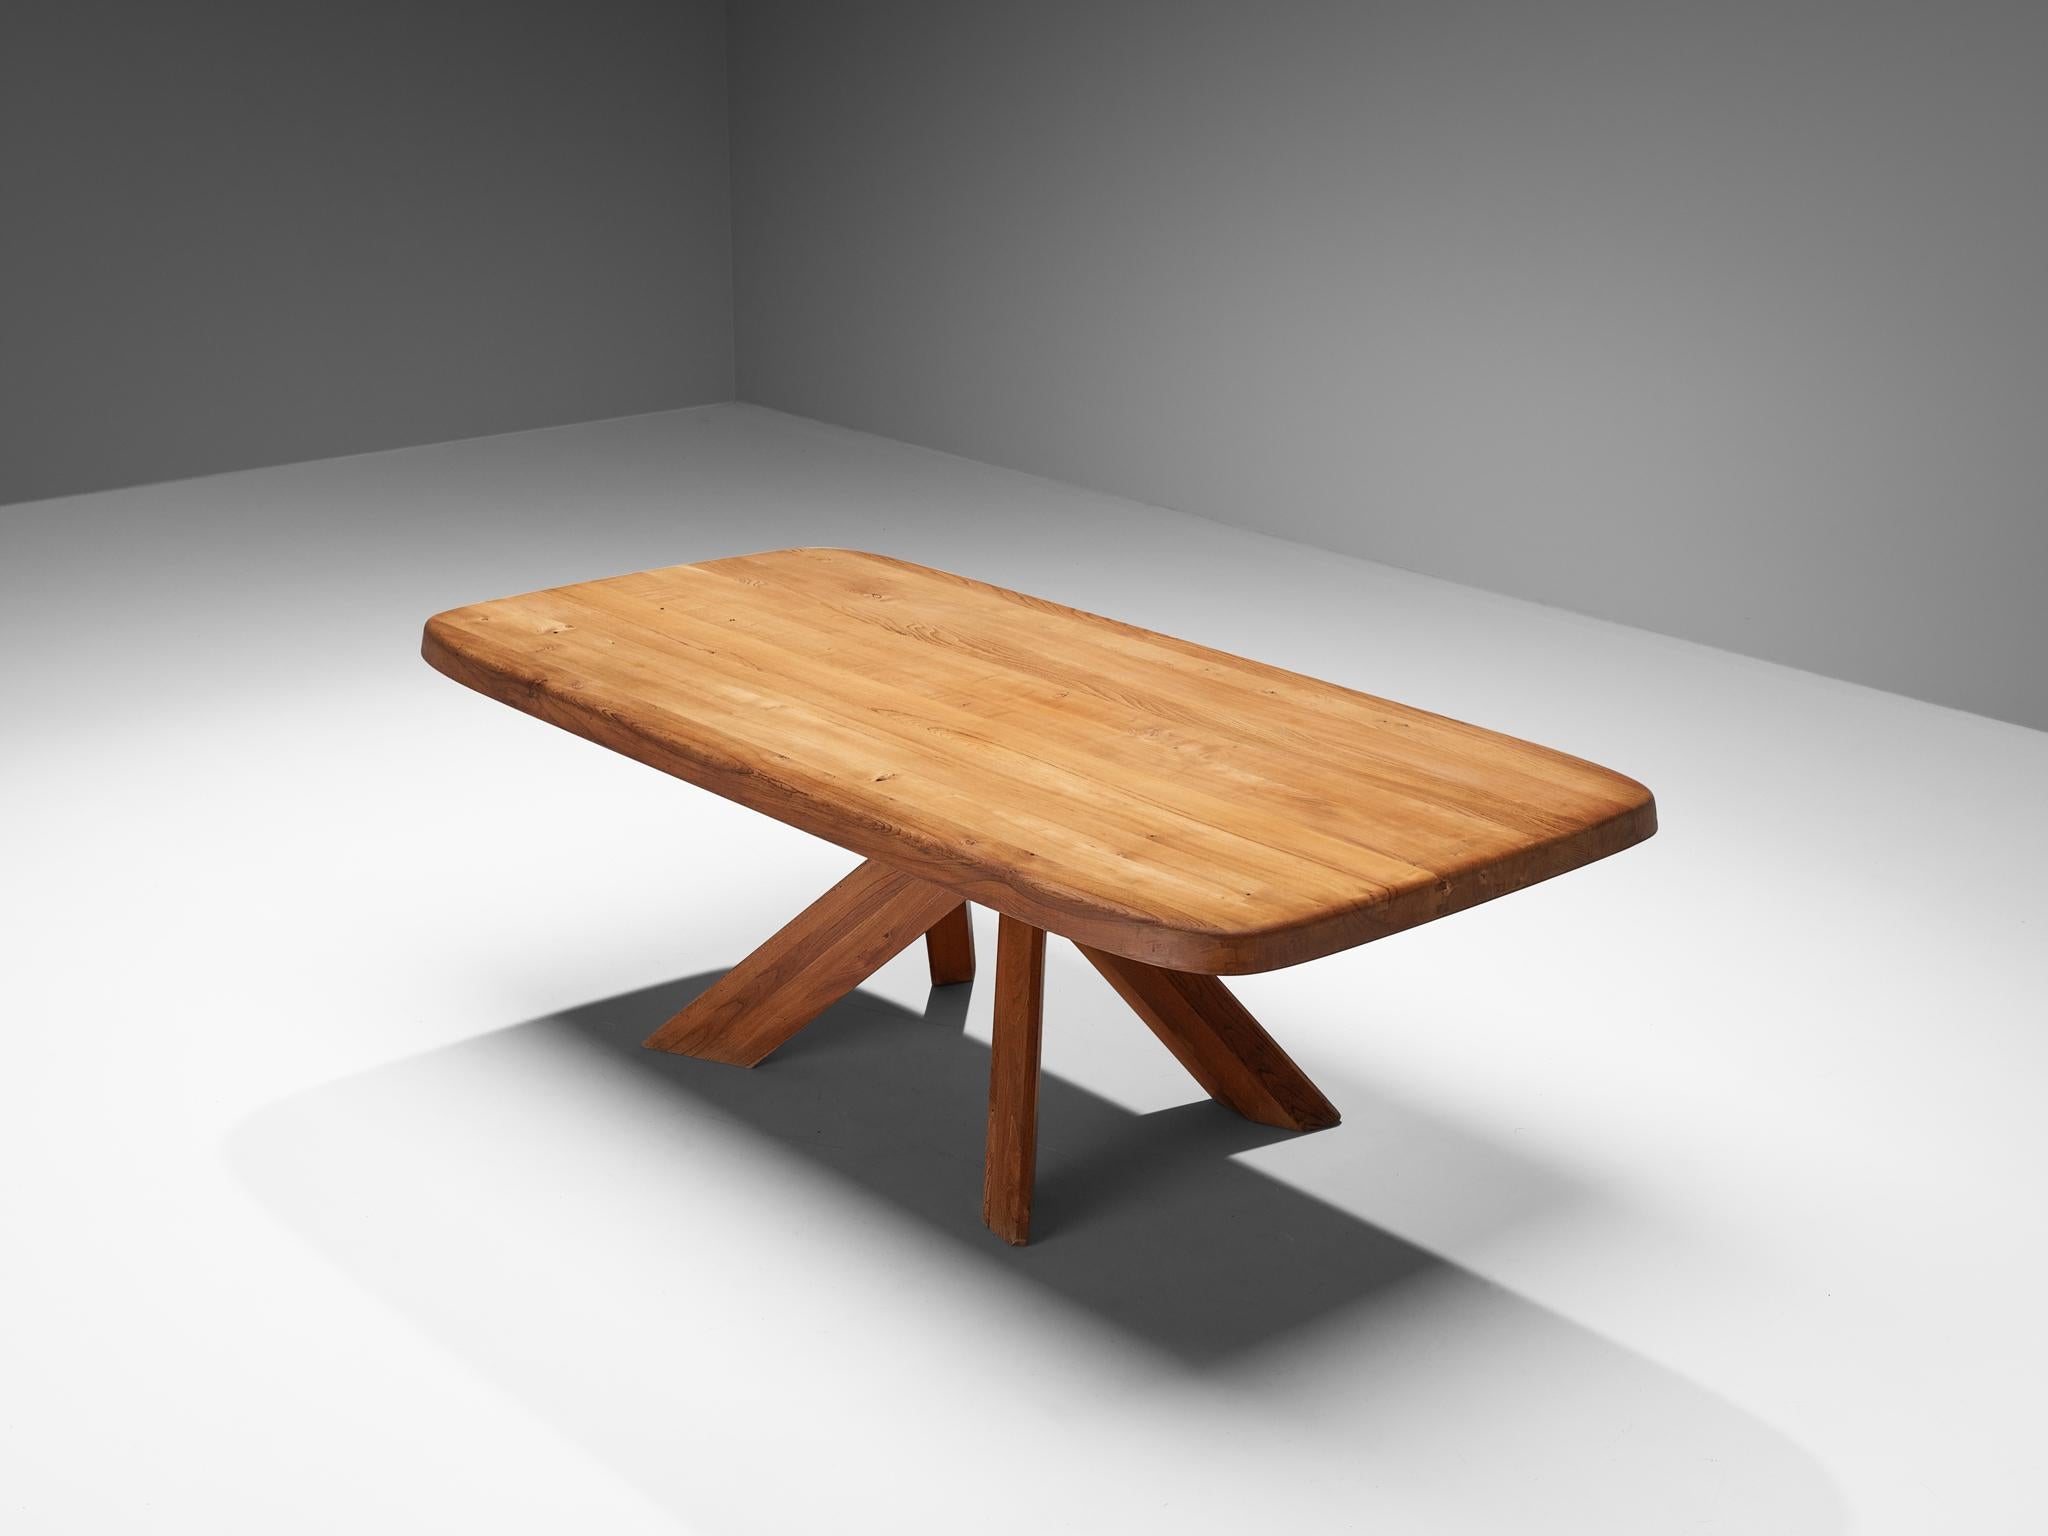 Pierre CIRCA, table de salle à manger, modèle 'Aban T35D', orme massif, France, vers 1972 

Cette table est l'une des premières éditions conçues par Pierre Chapo, connu pour son utilisation caractéristique du bois d'orme massif et son engagement en